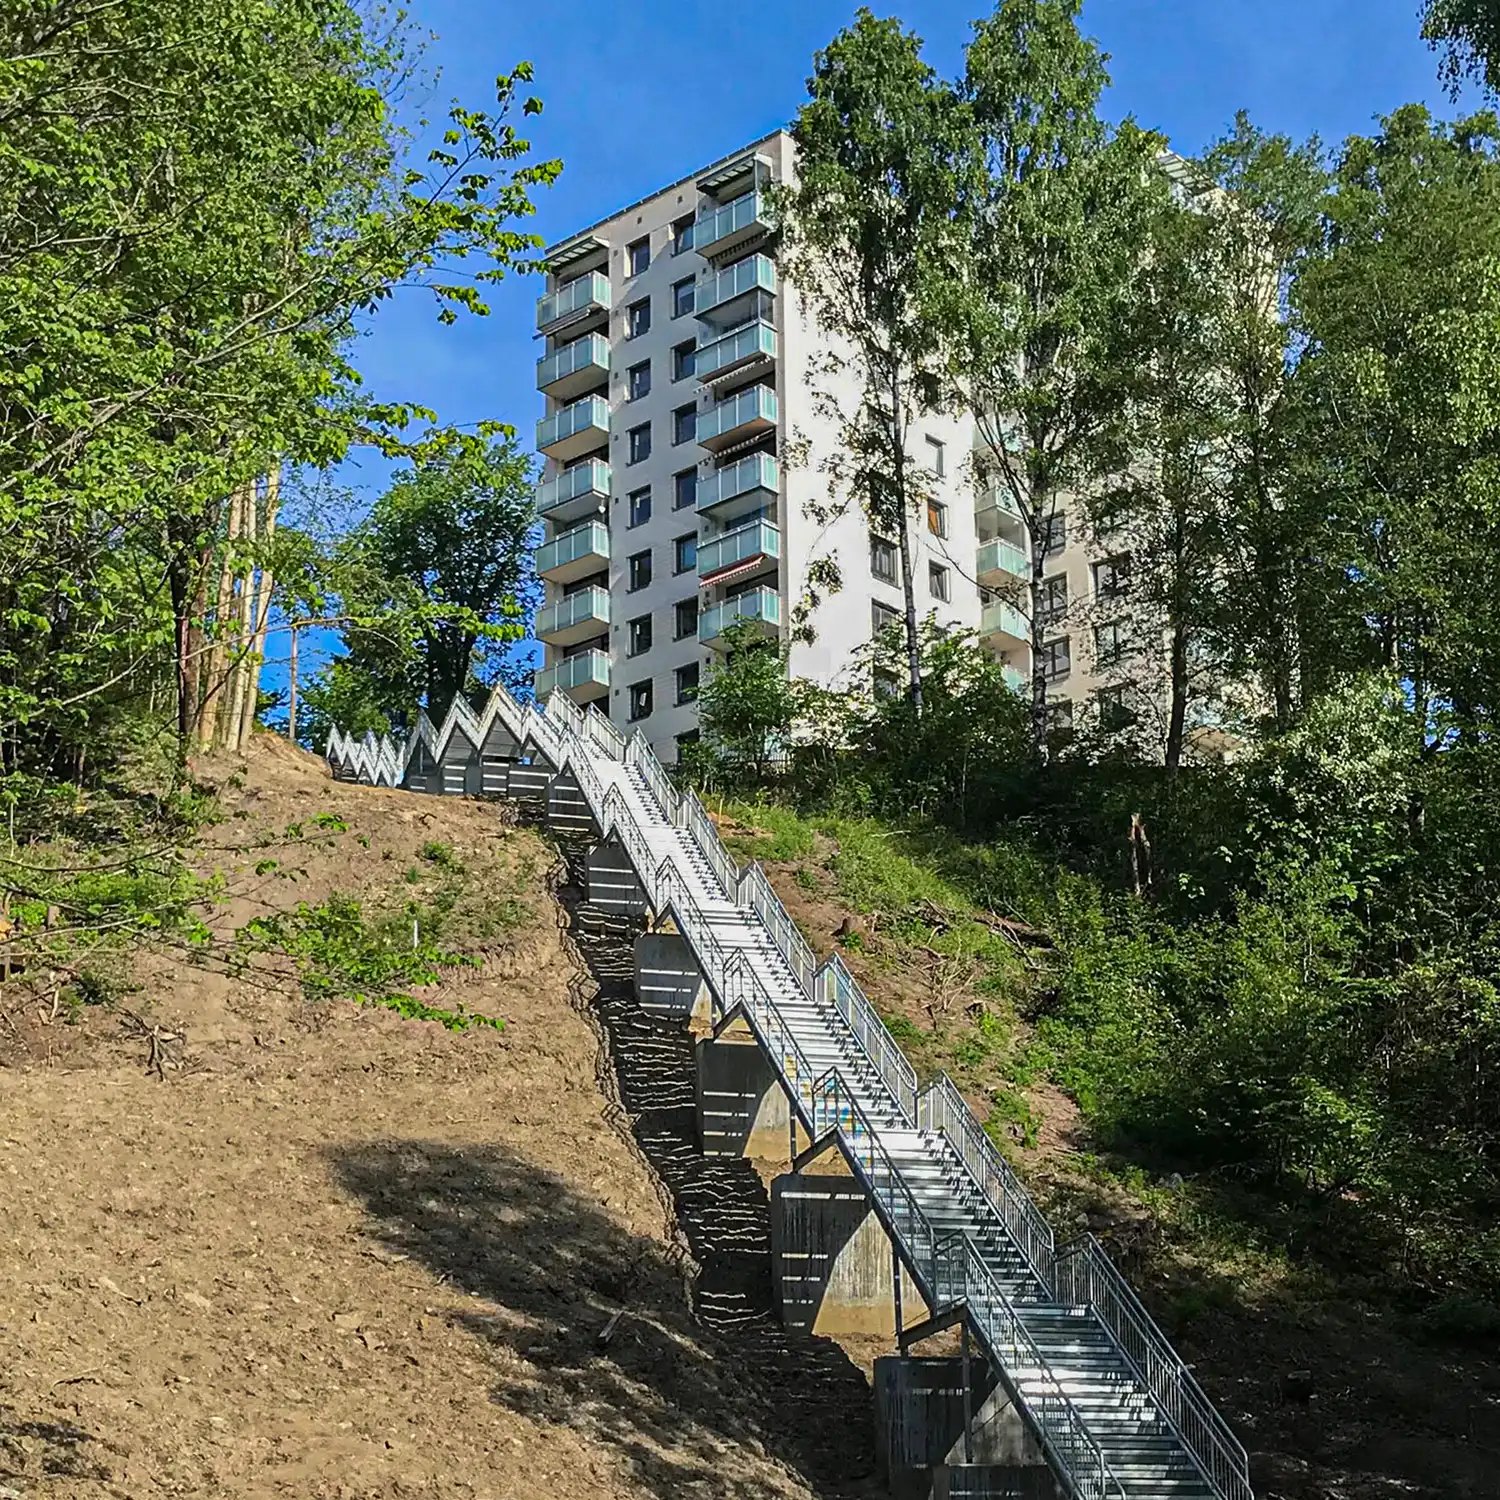 Terrengtrapp på Frysja i Oslo. Sett fra bunnen. Lang trapp.